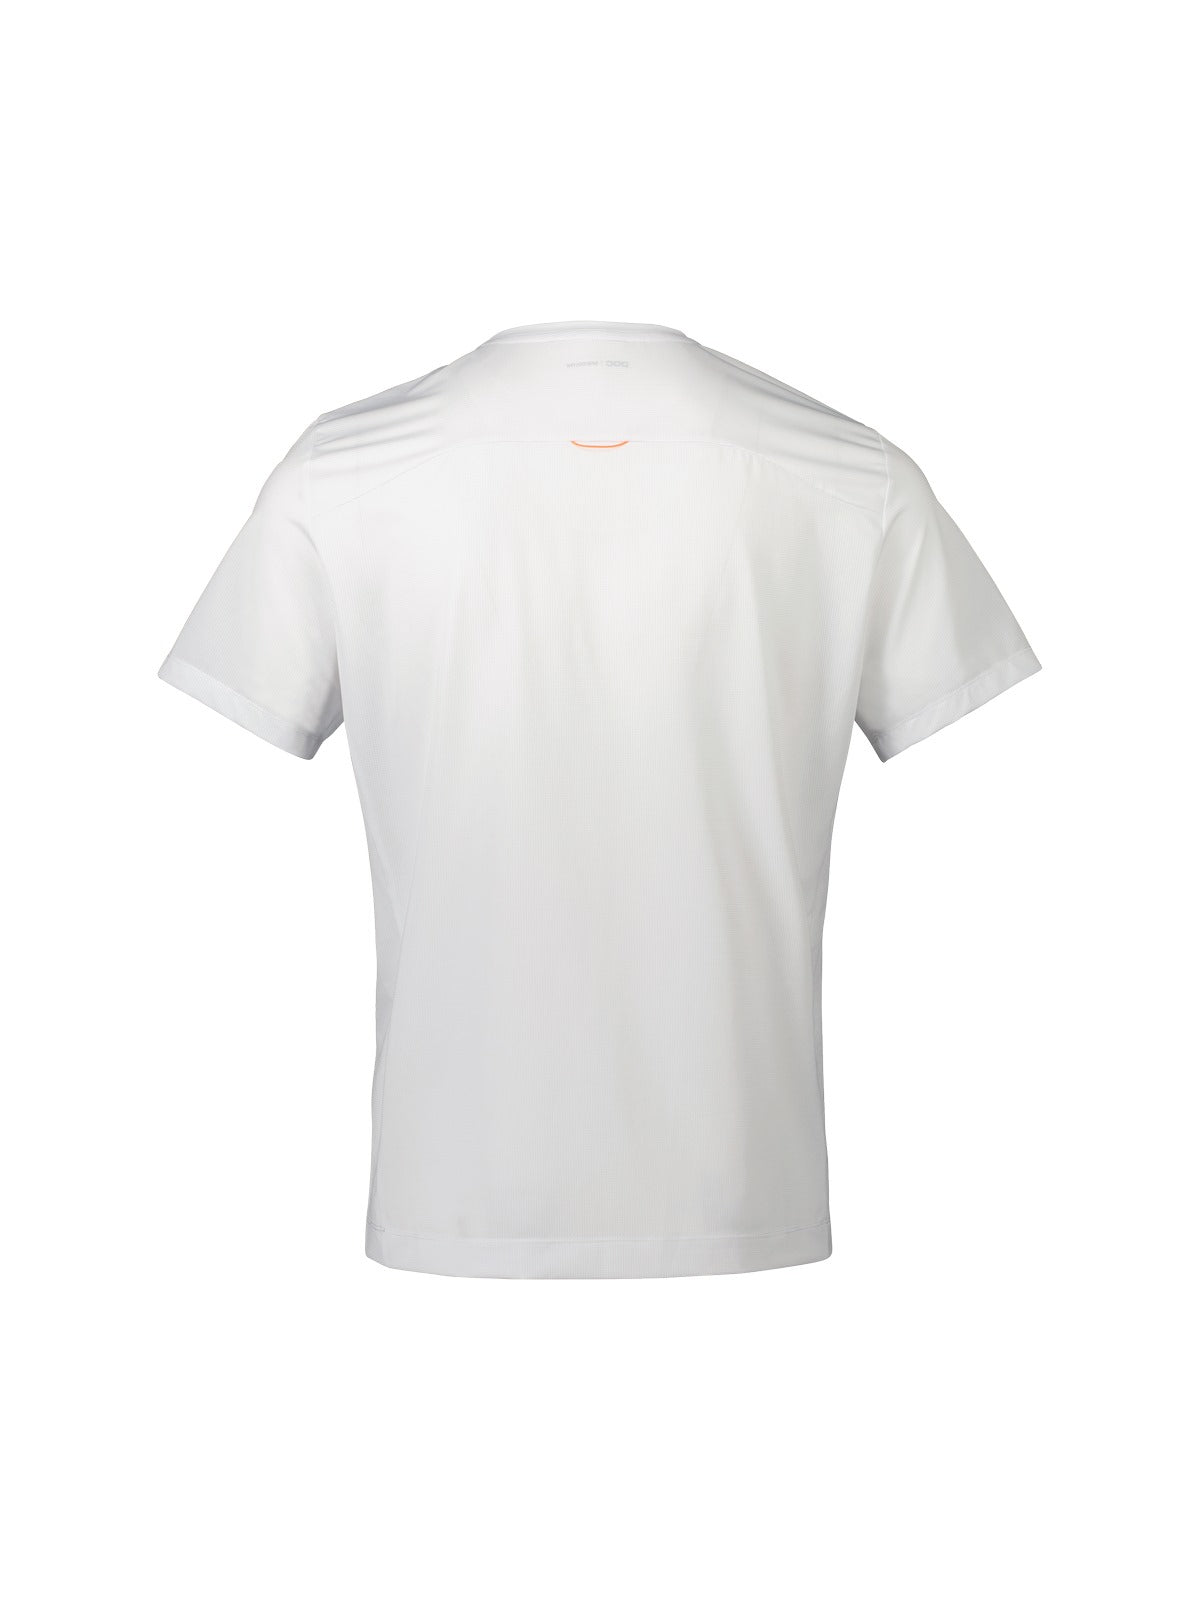 T-Shirt POC AIR Tee - Hydr. White